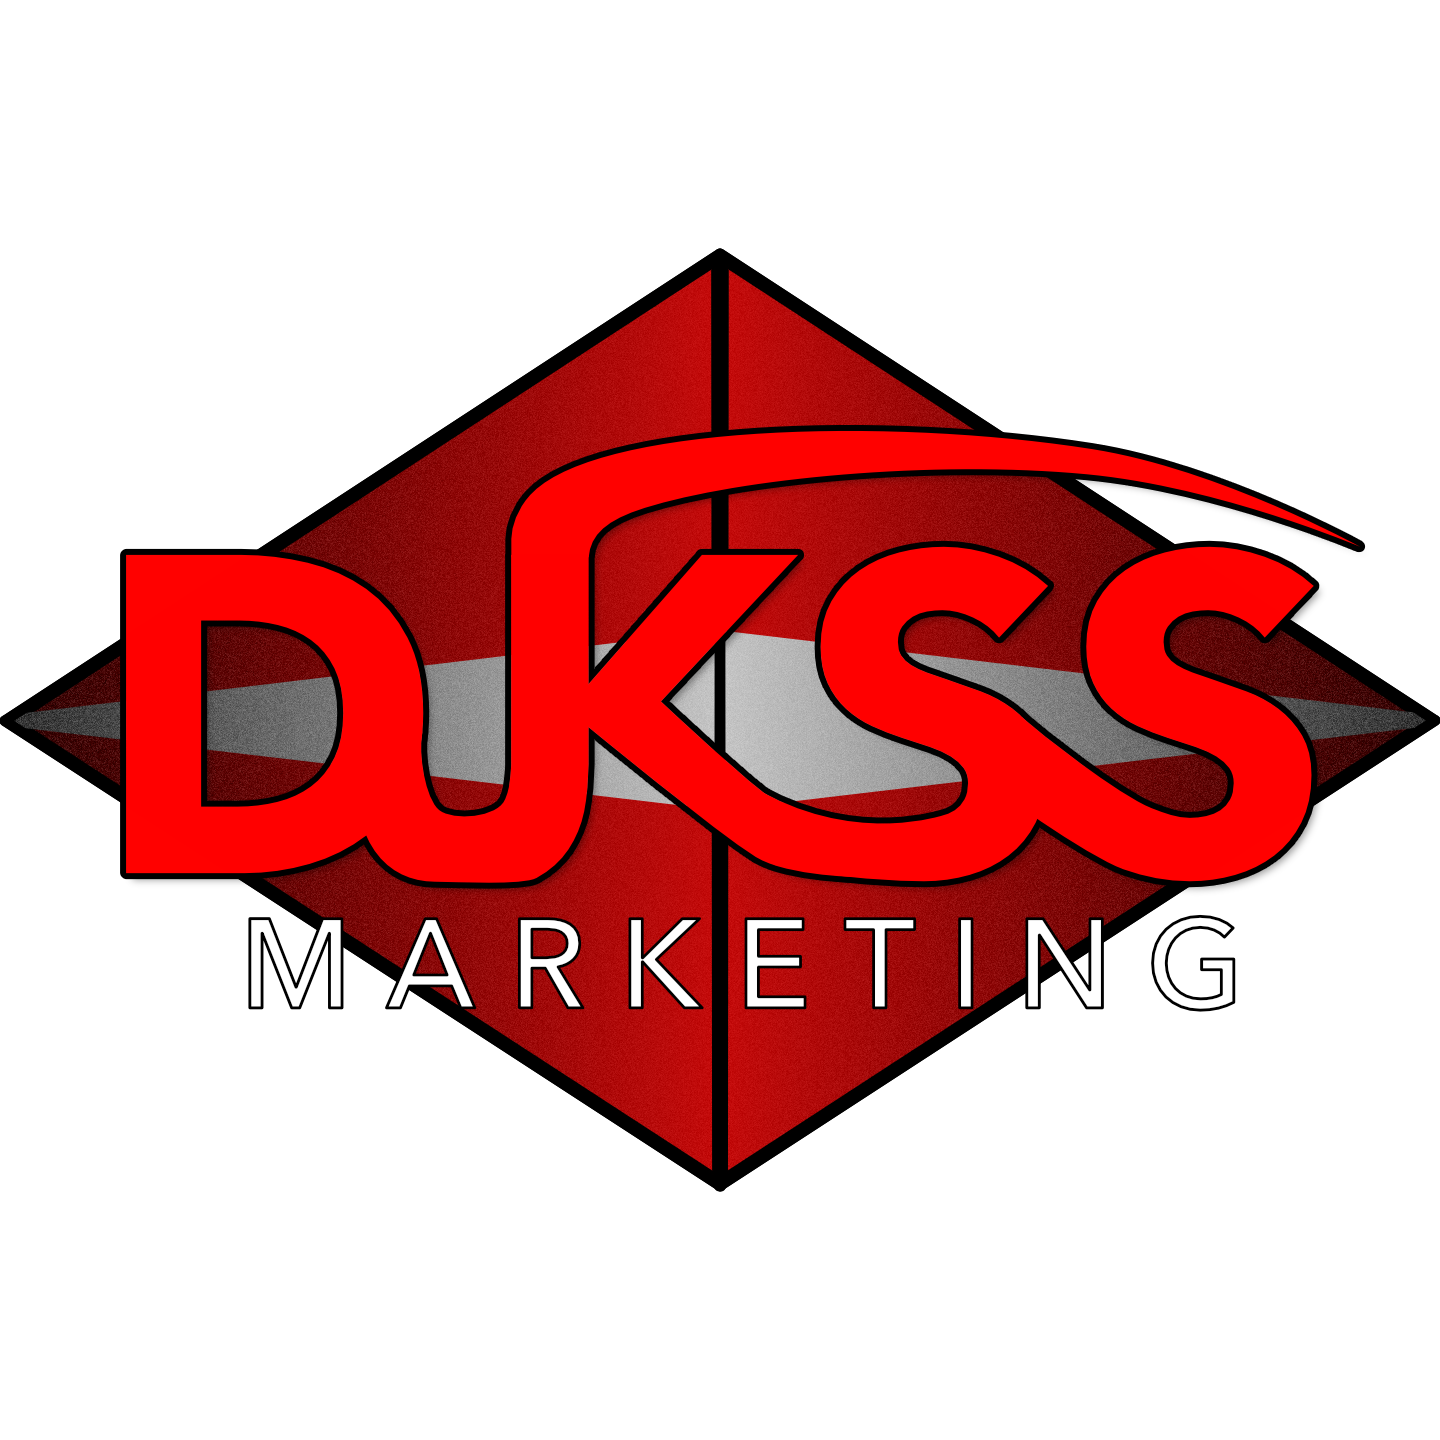 DJKSS Marketing LLC